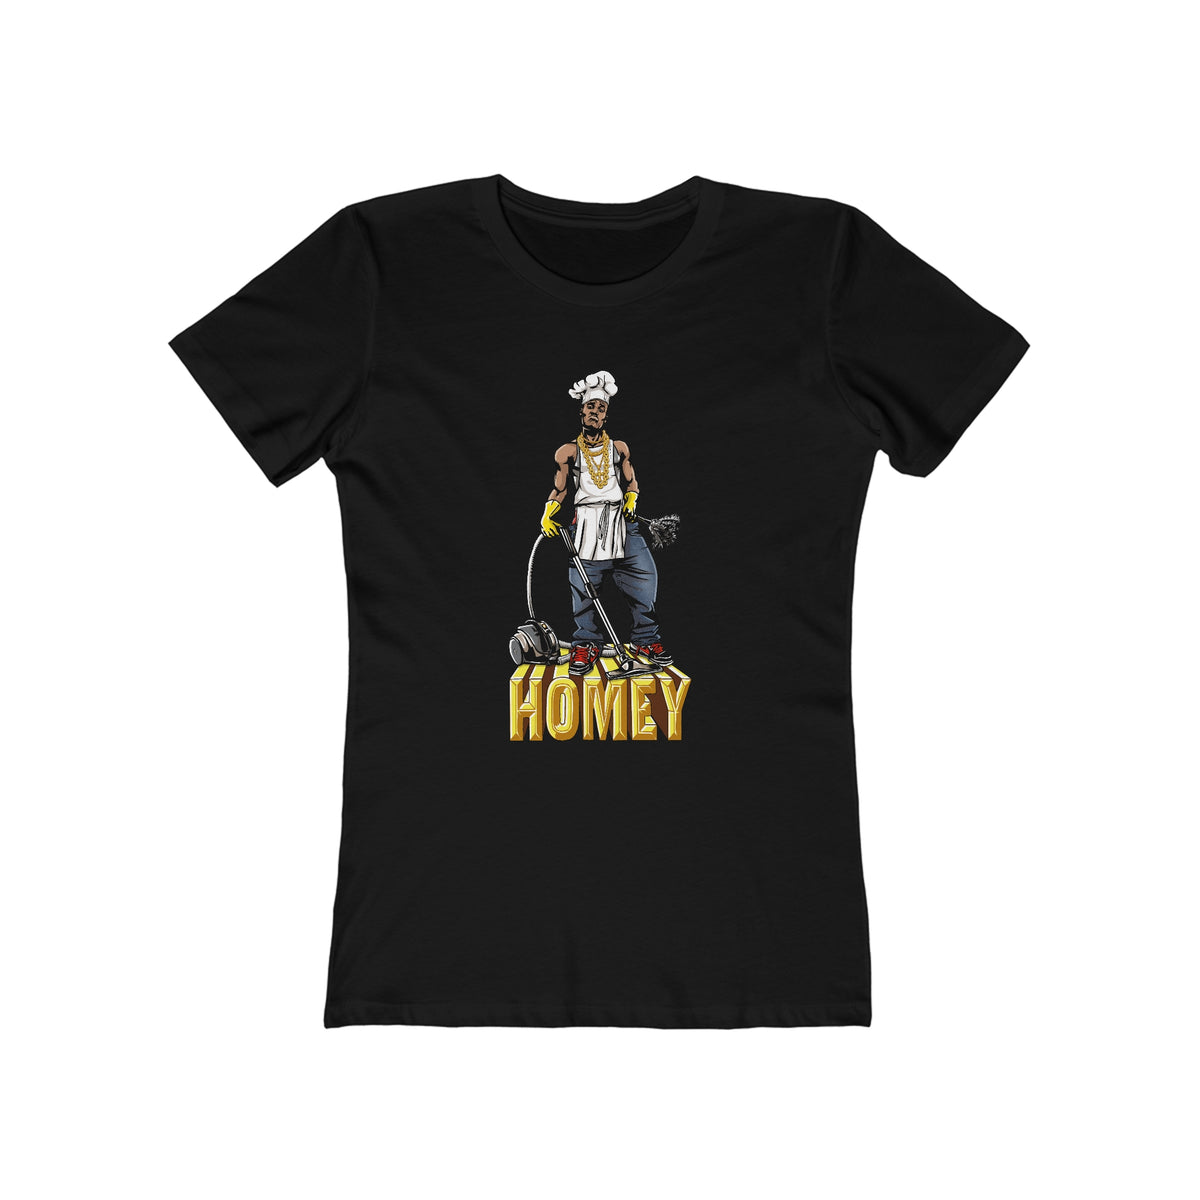 Homey - Women’s T-Shirt